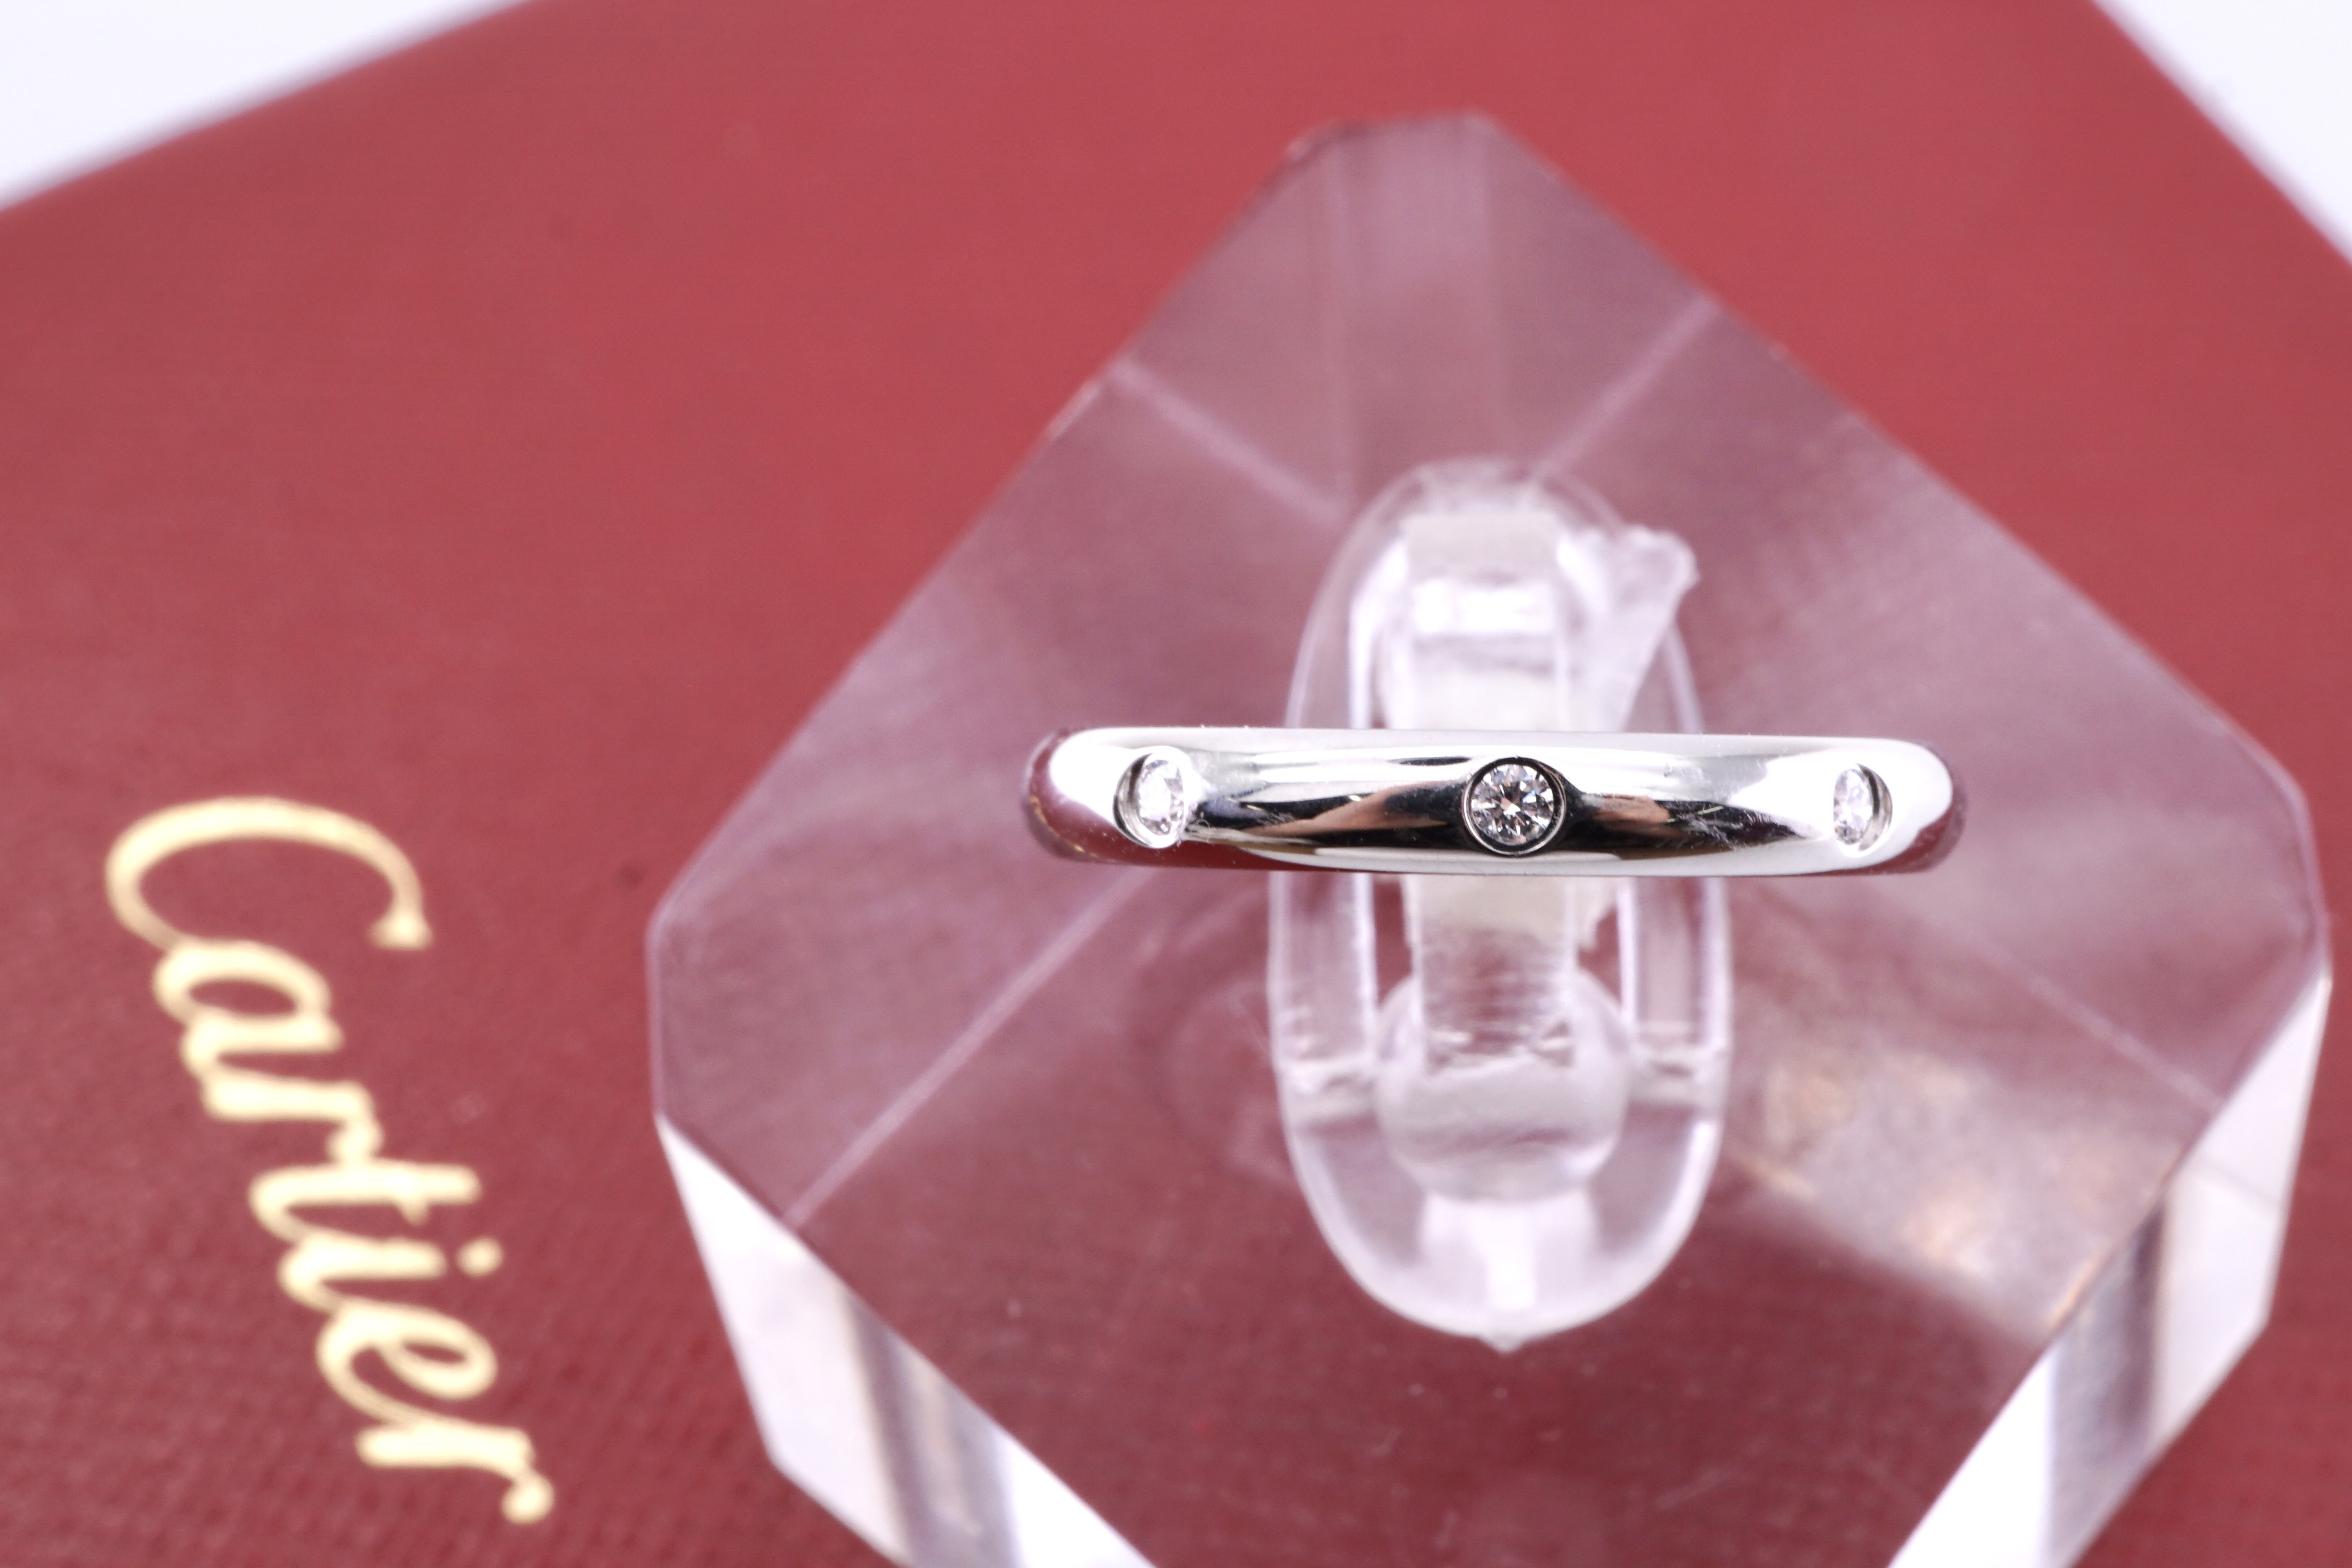 投稿記事「カルティエの結婚指輪を高価買取いたしました！」の商品画像